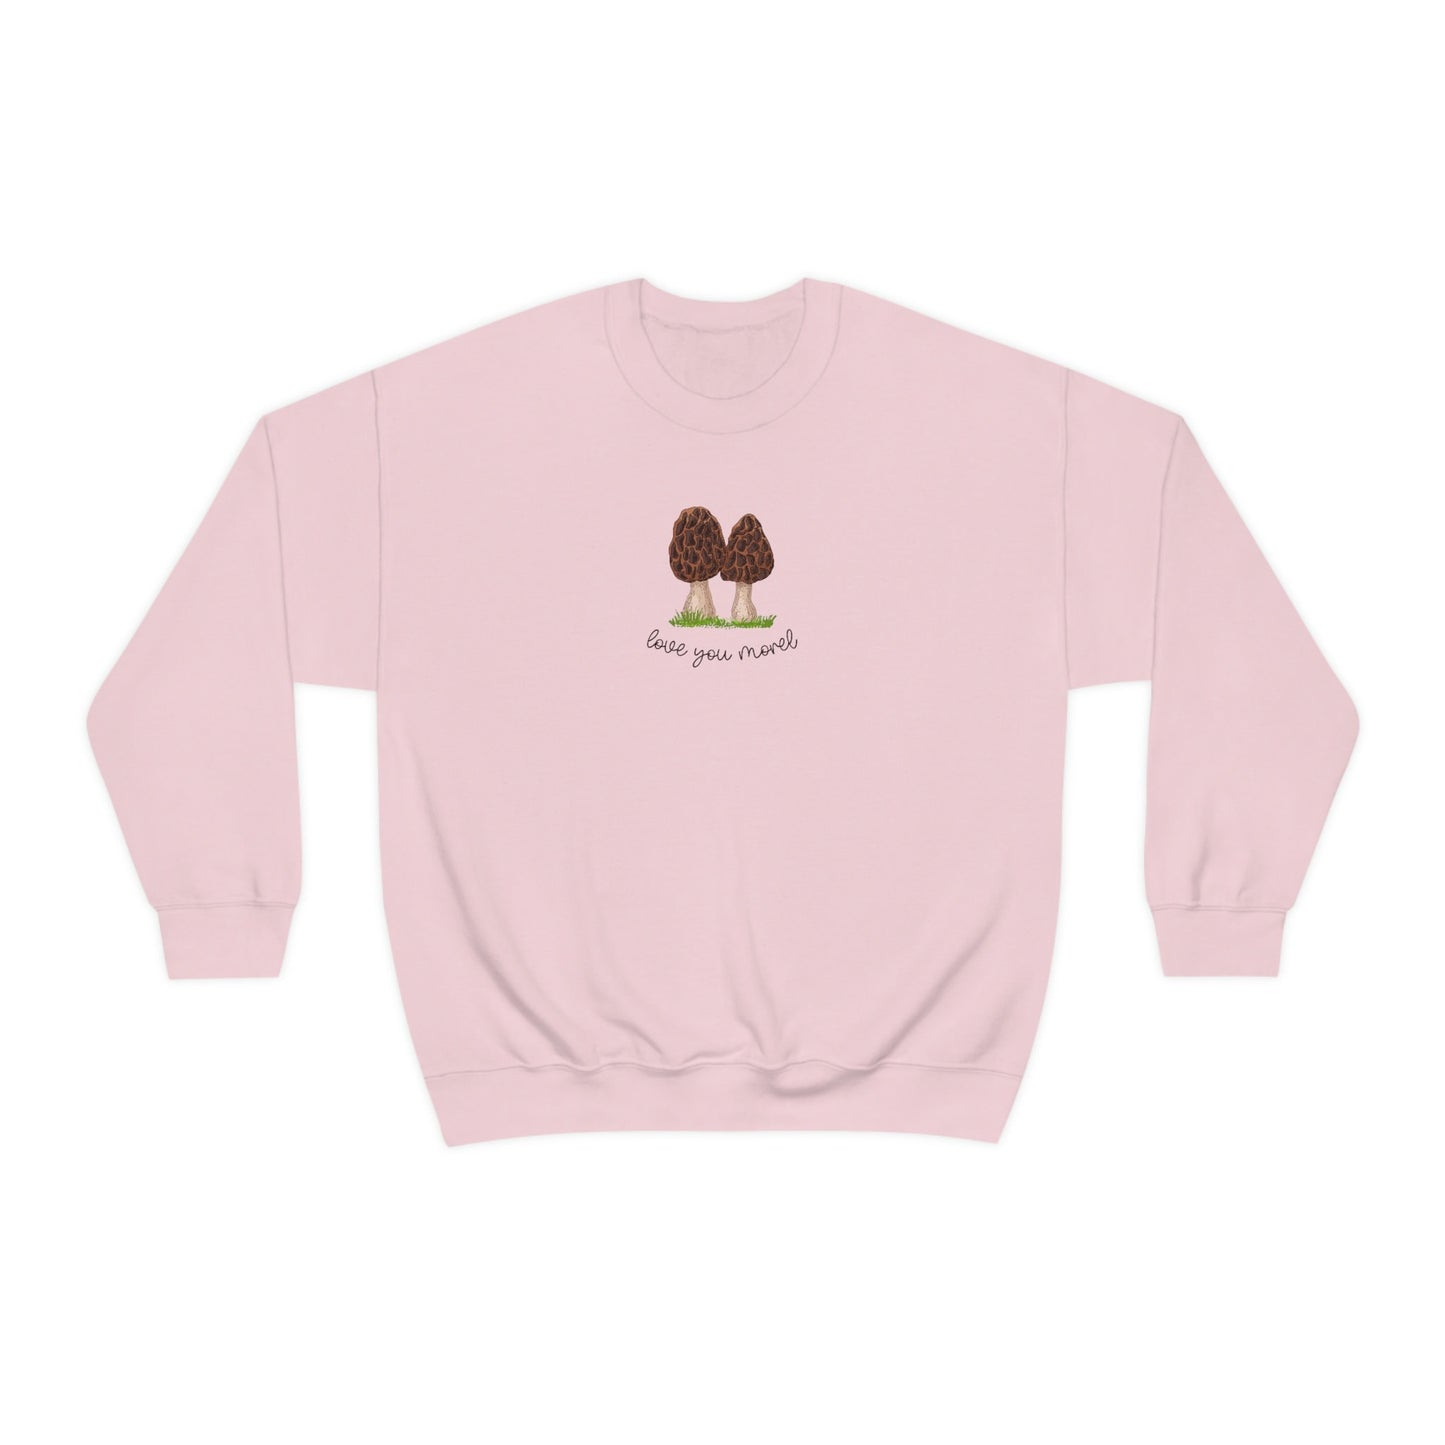 Mushroom Sweatshirt Morel Mushroom Cottage Core Clothes Love You Morel Mushroom Lovers Gift Couples Shirt Matching Mom Shirt